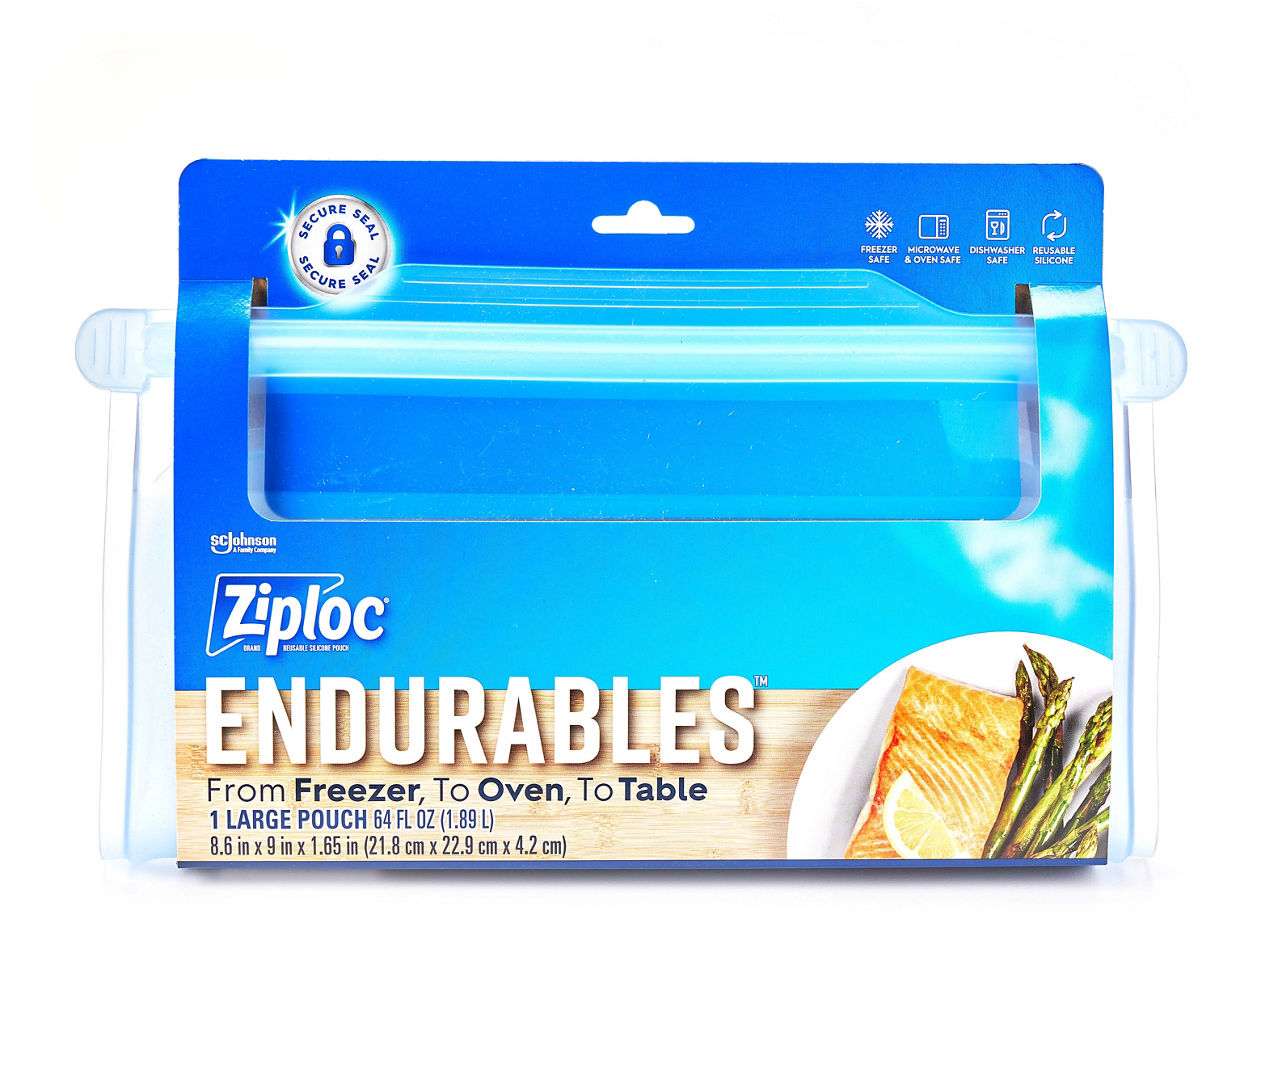 Ziploc Endurables Pouch, Large, 64 Ounce